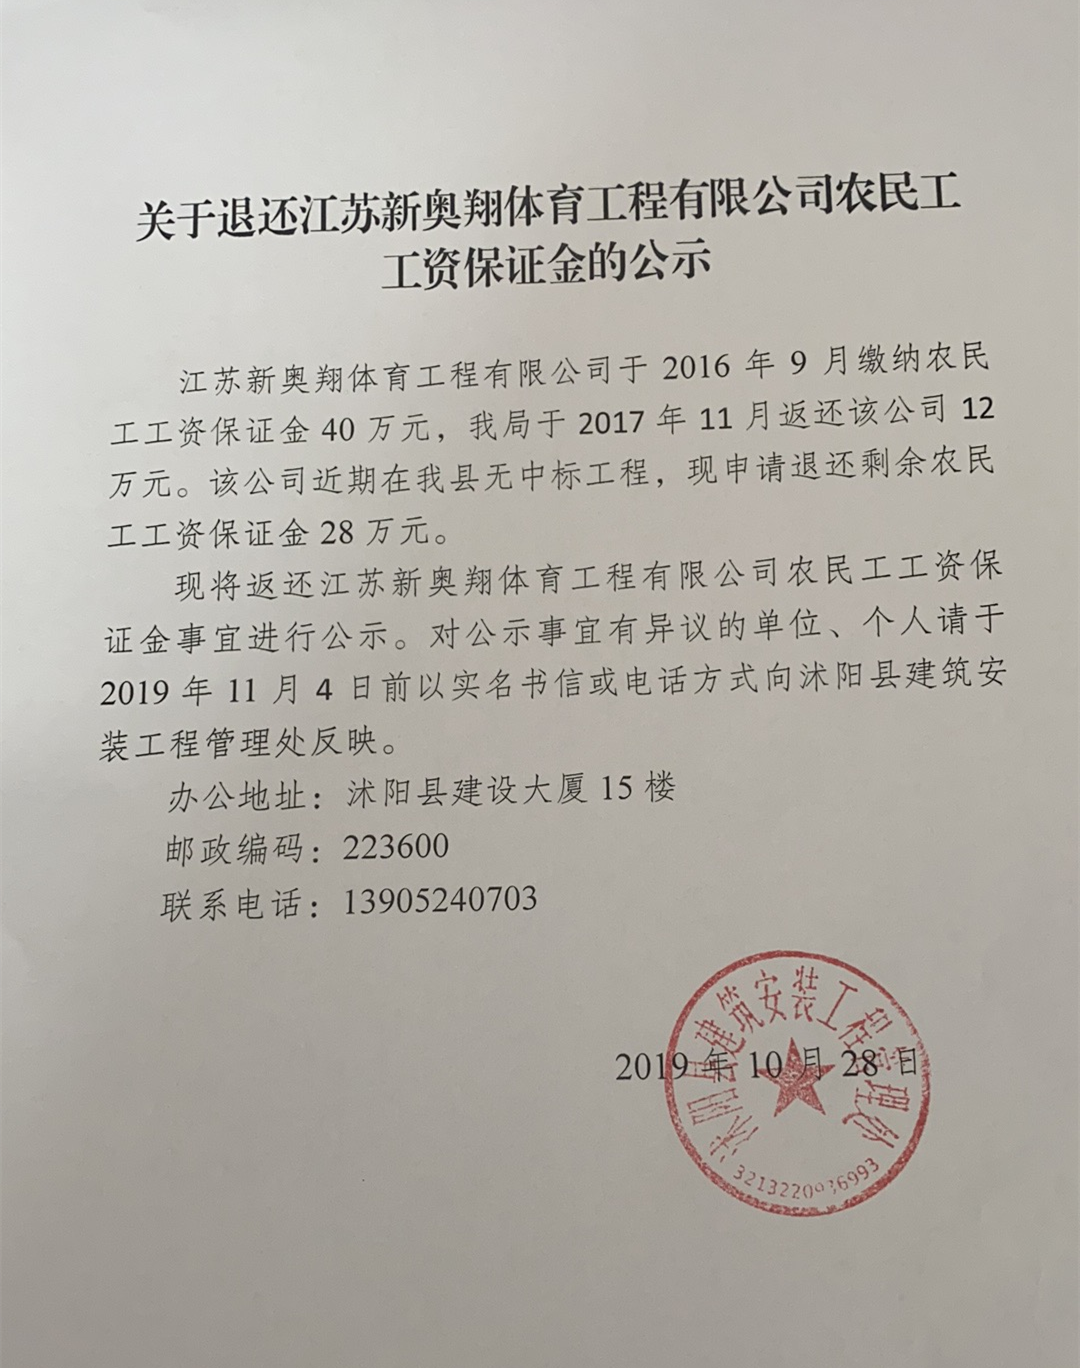 关于退还江苏新奥翔体育工程有限公司农民工工资保证金的公示